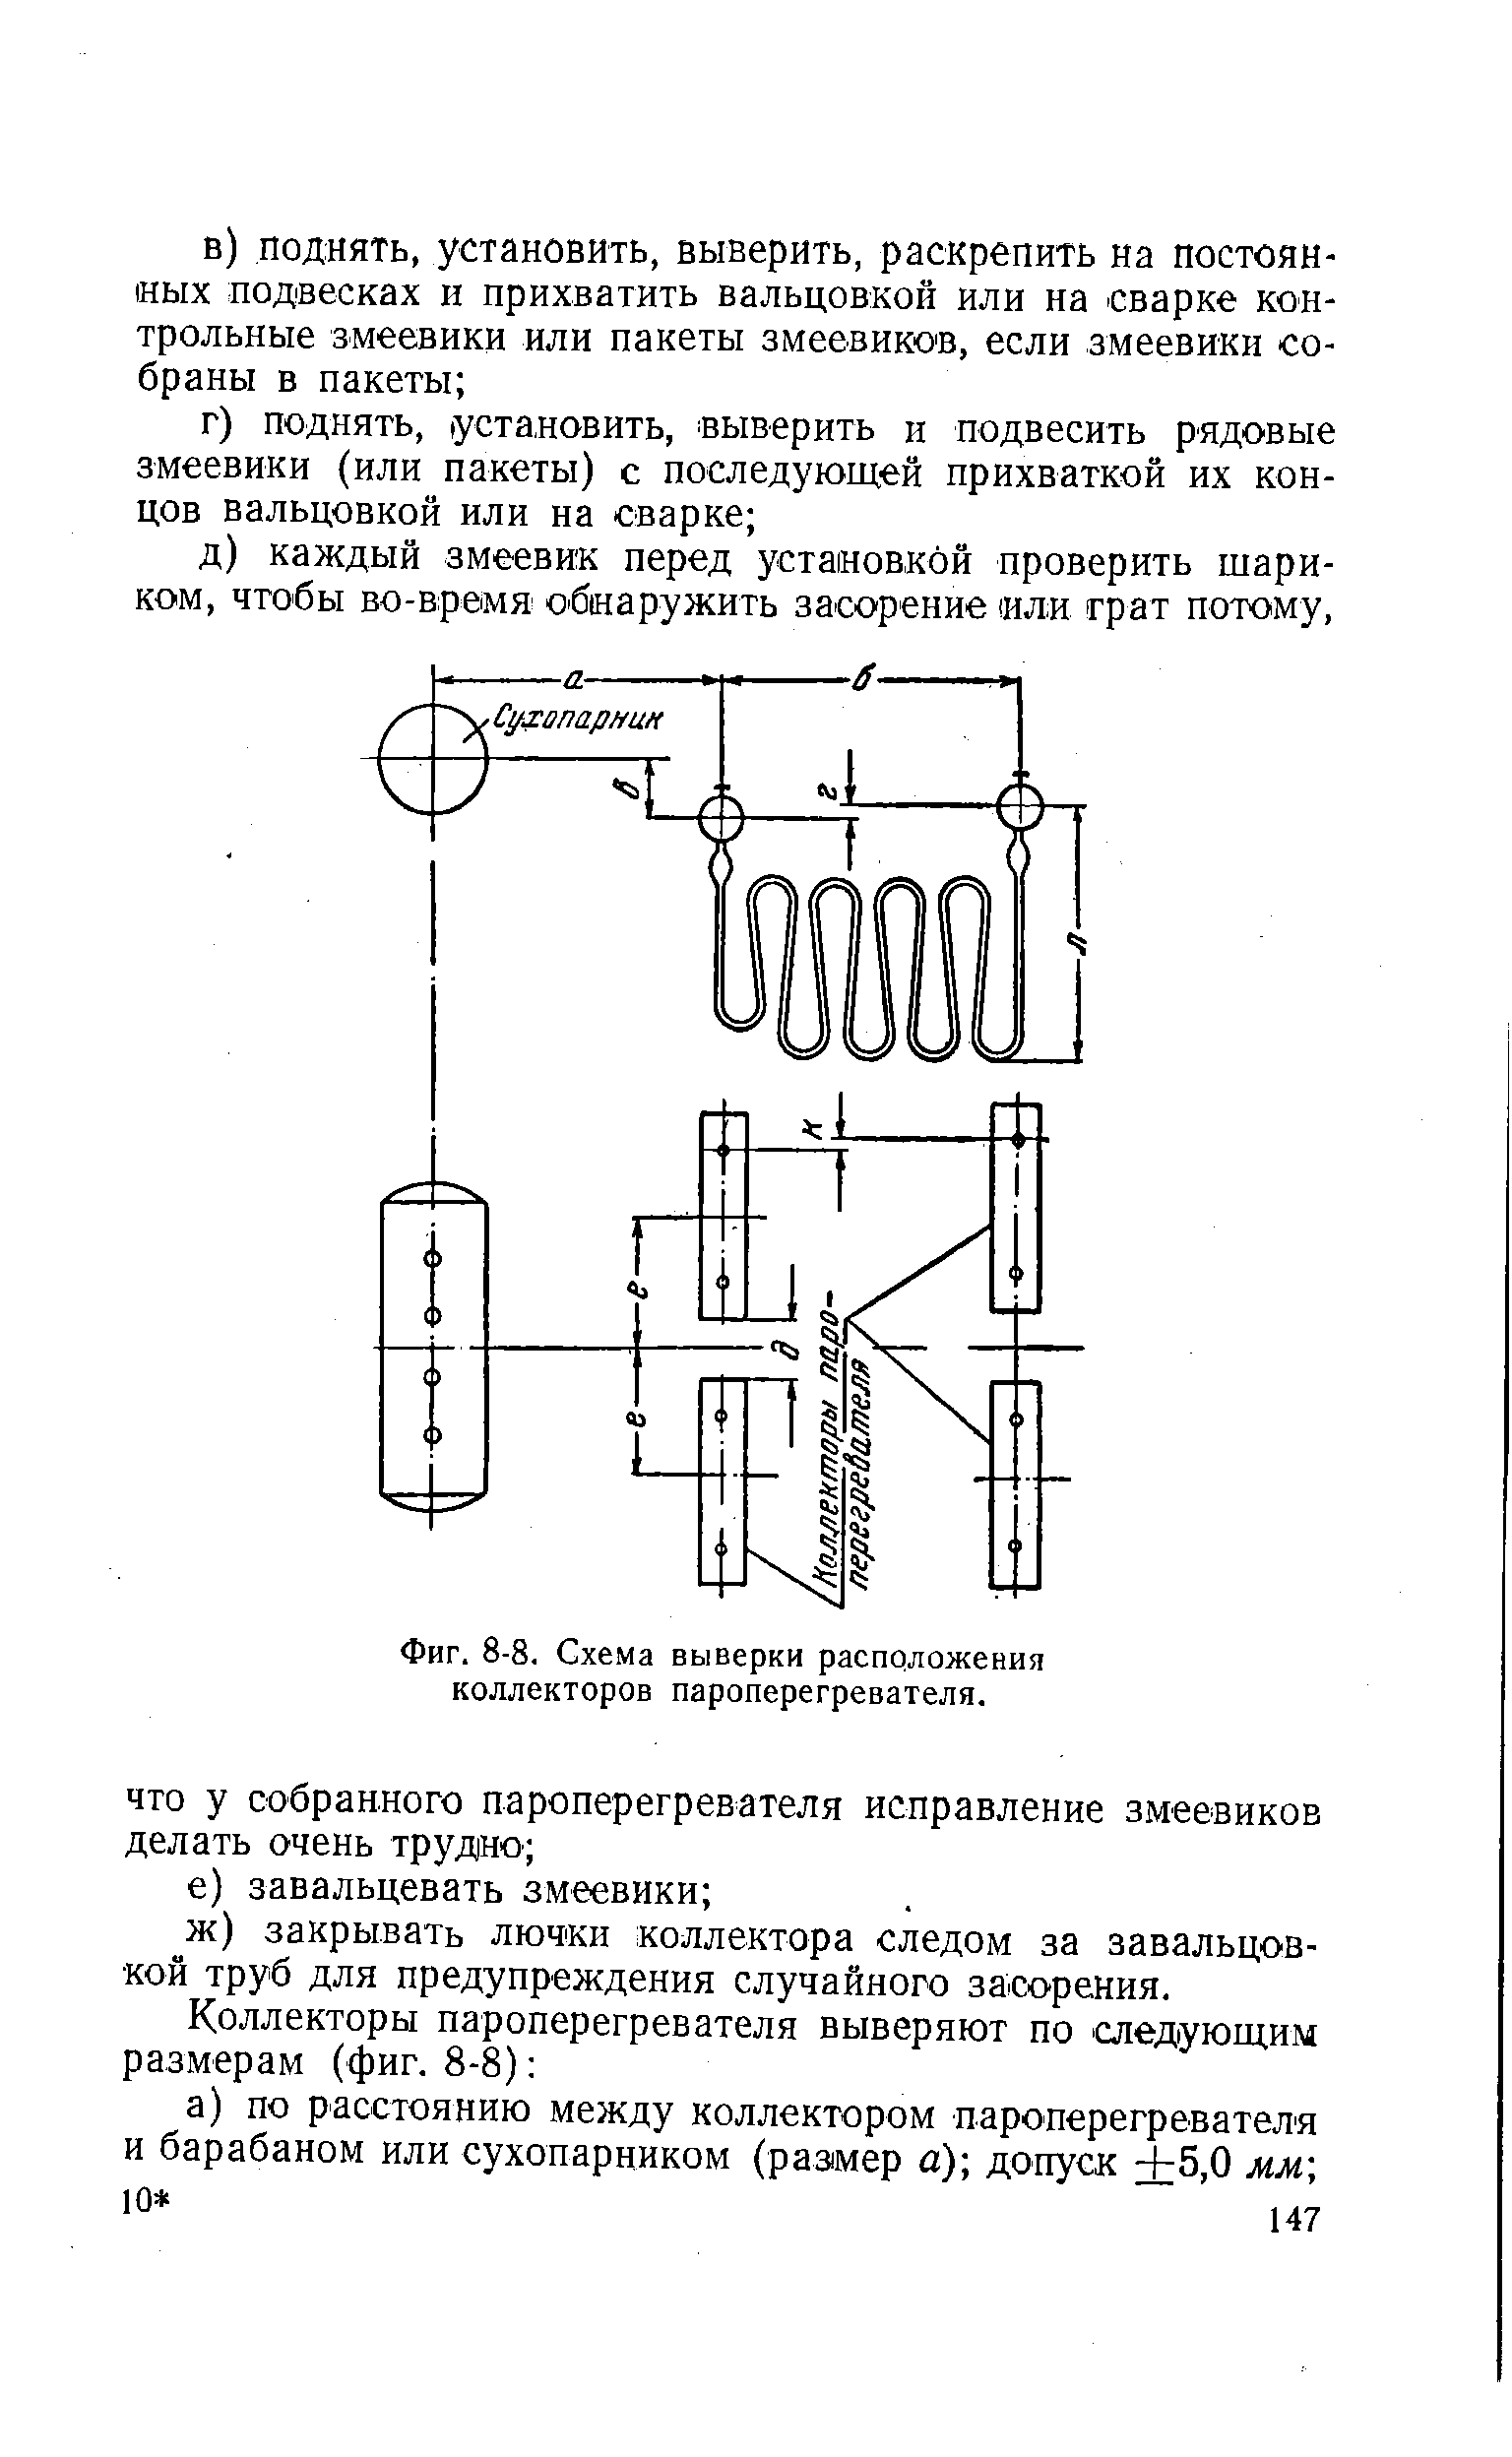 Фиг. 8-8. Схема выверки расположения коллекторов пароперегревателя.
